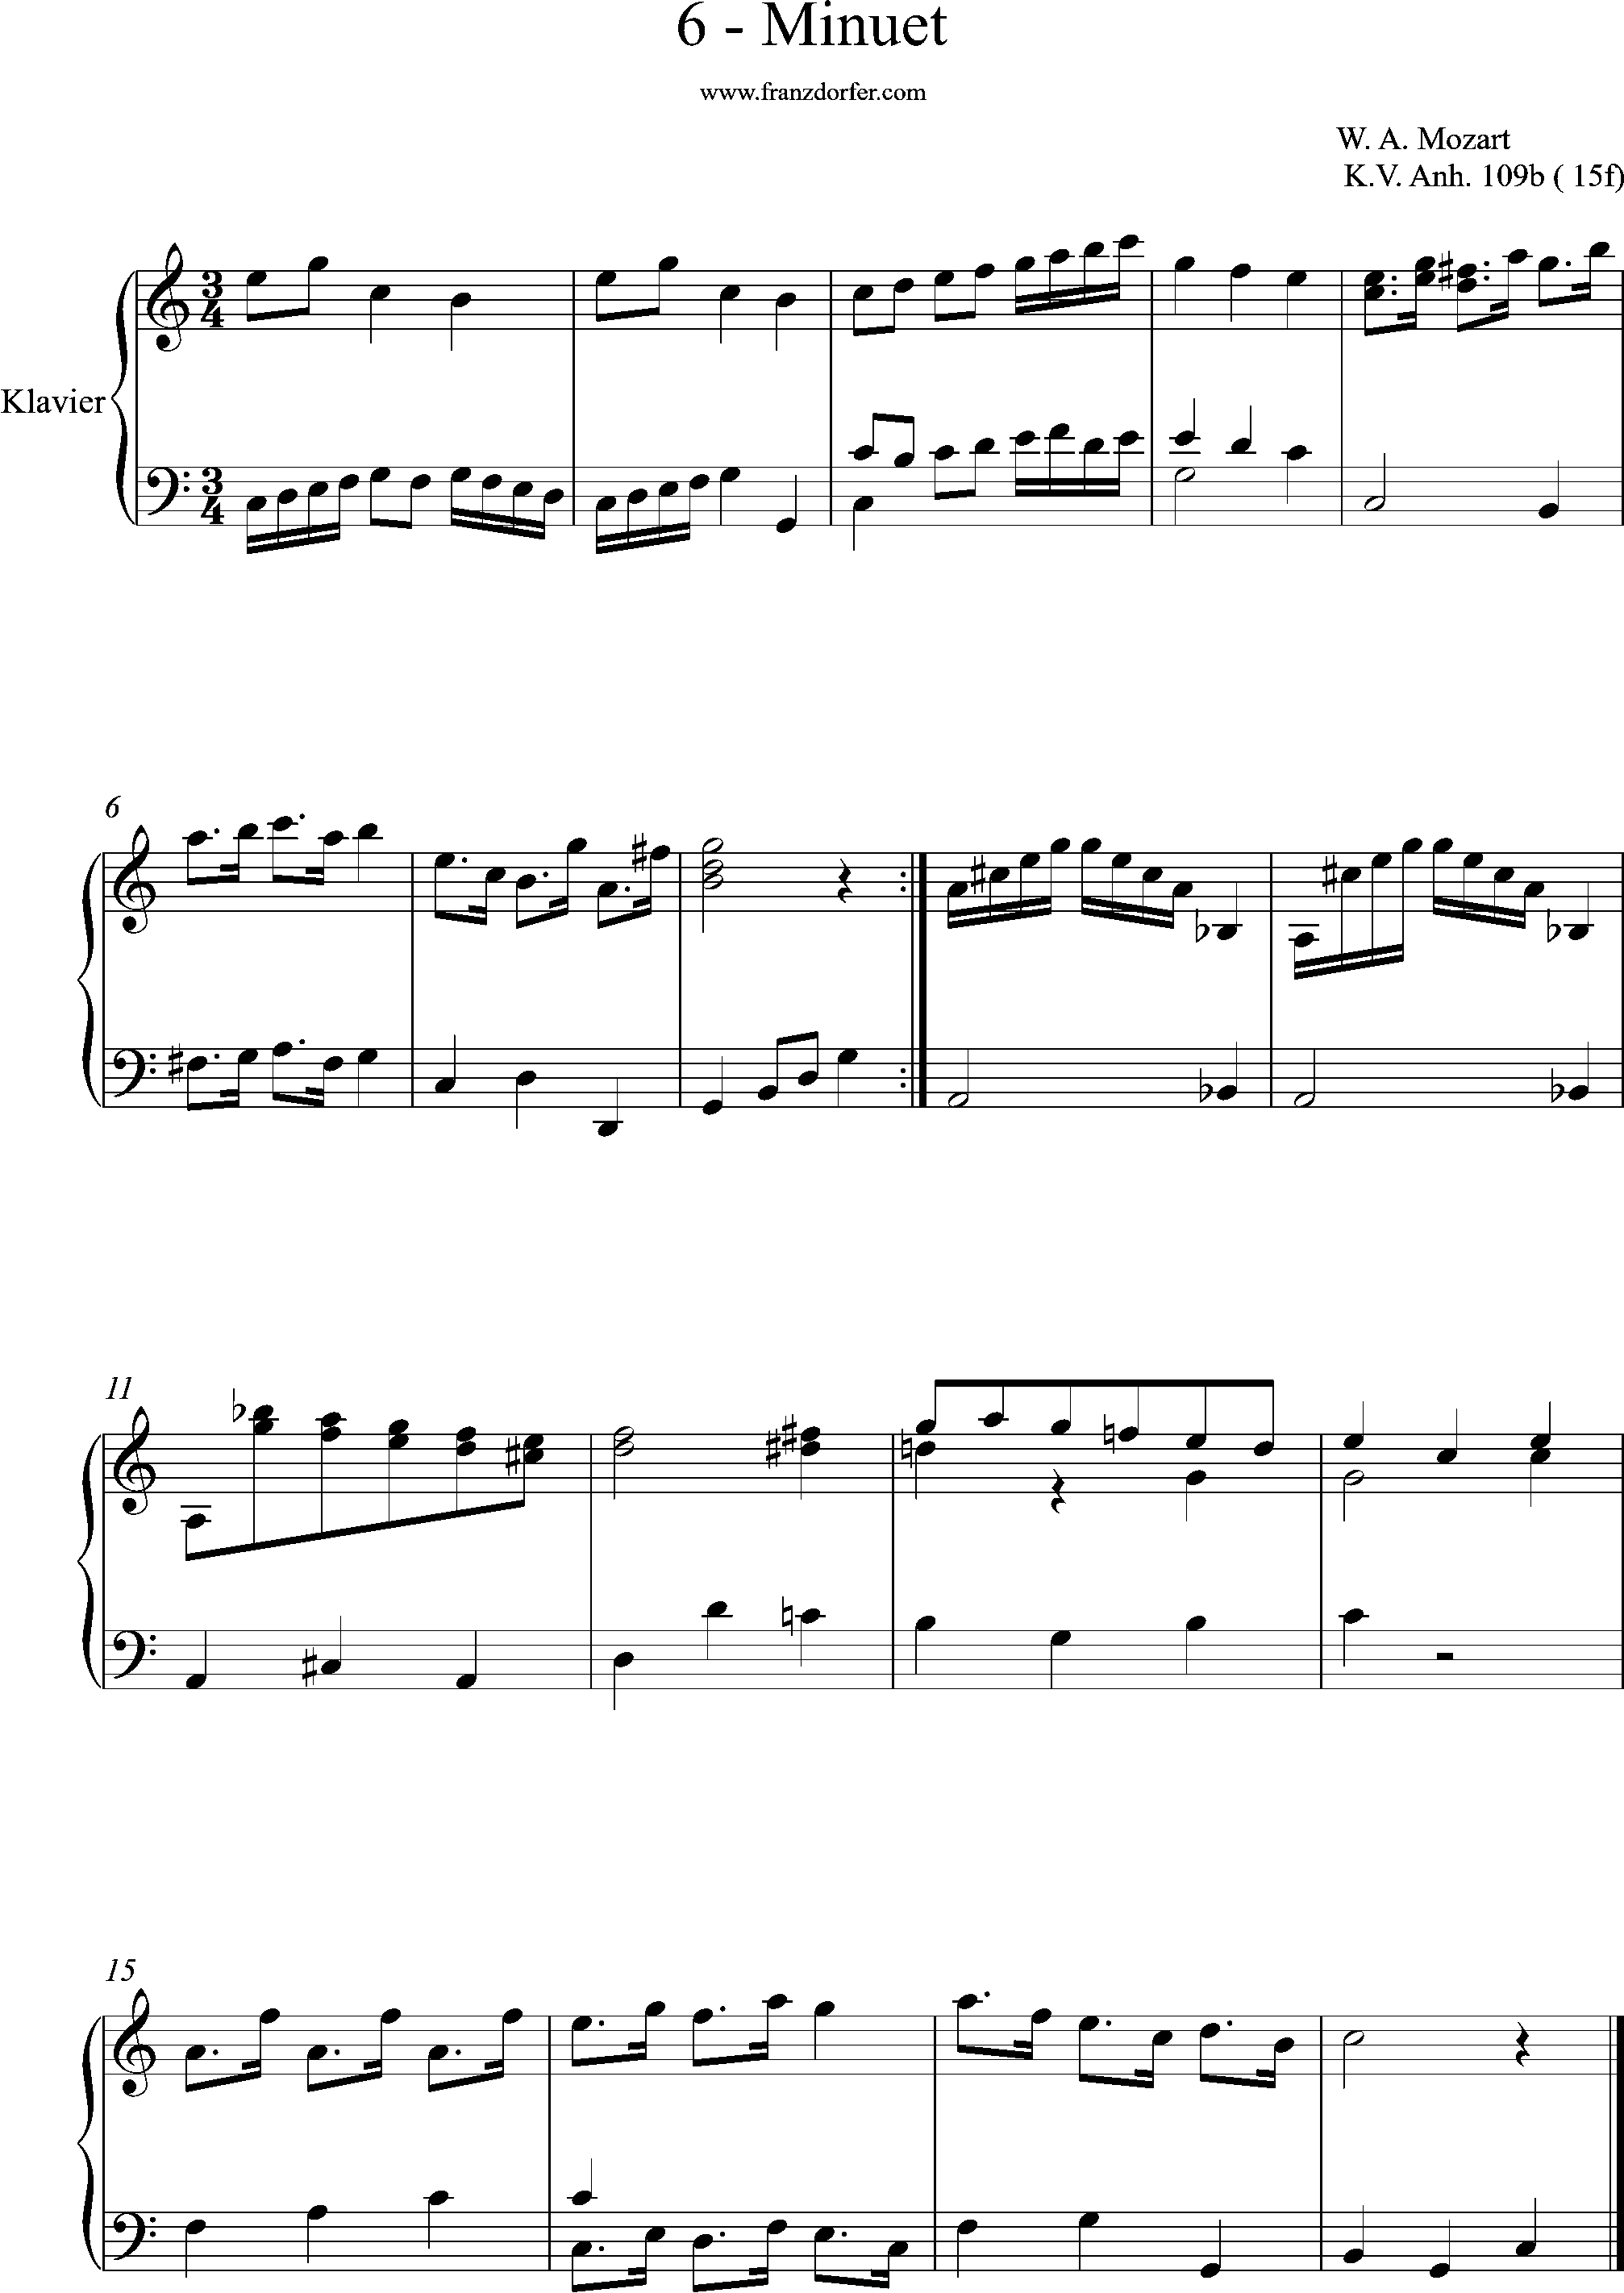 KV 109b, 15f, Minuet, C-Dur, Mozart